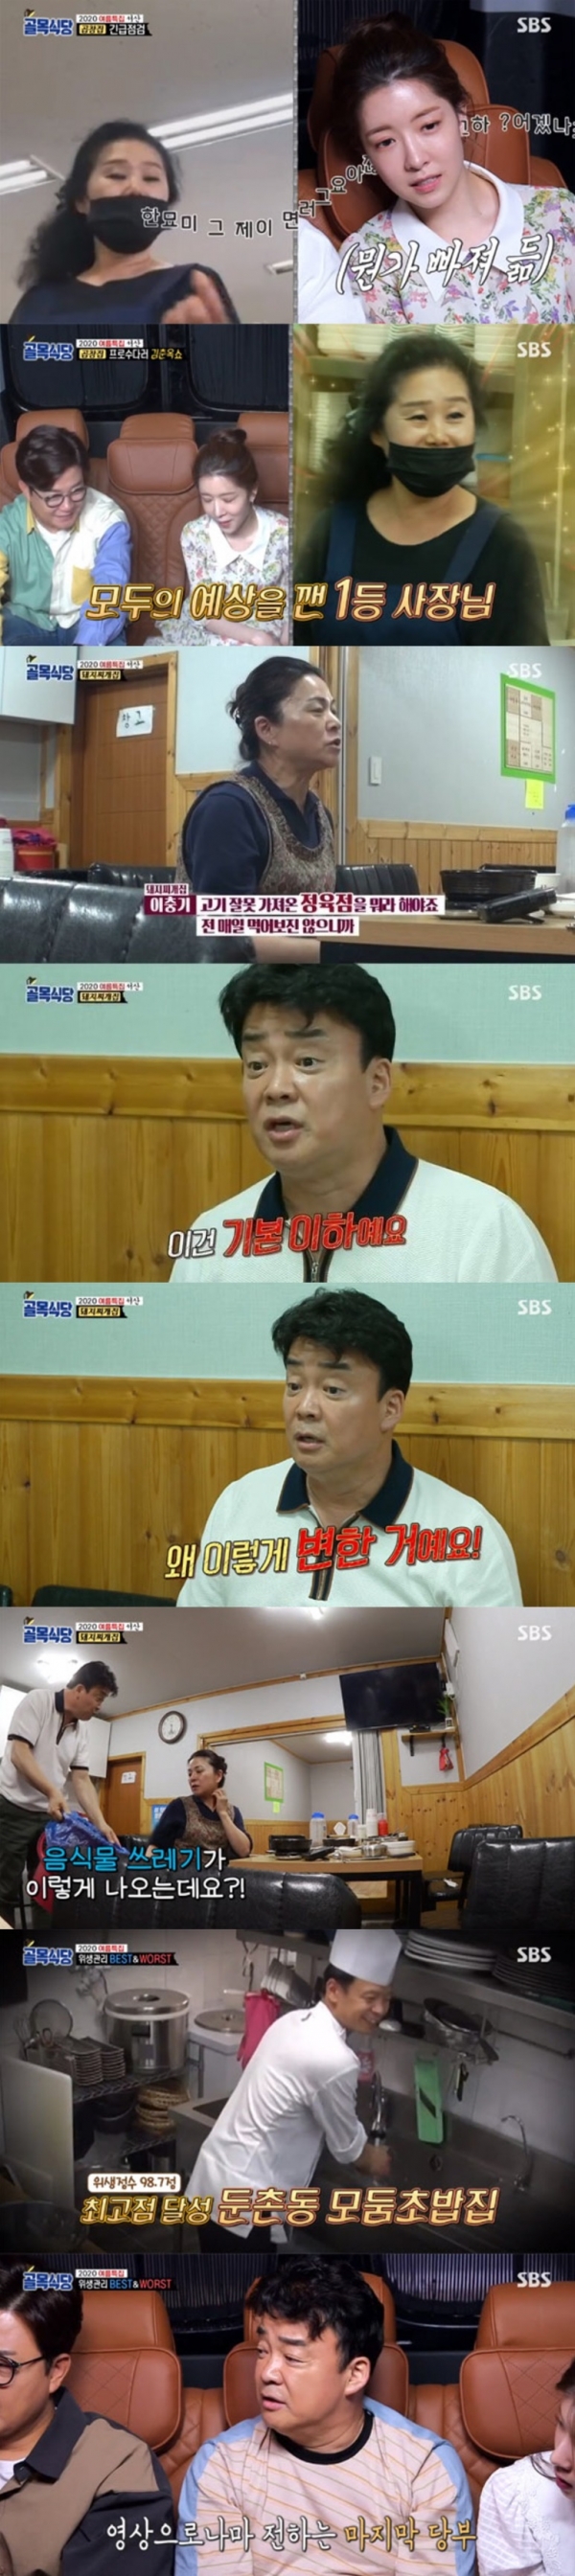 SBS ‘백종원의 골목식당’ 방송 화면.